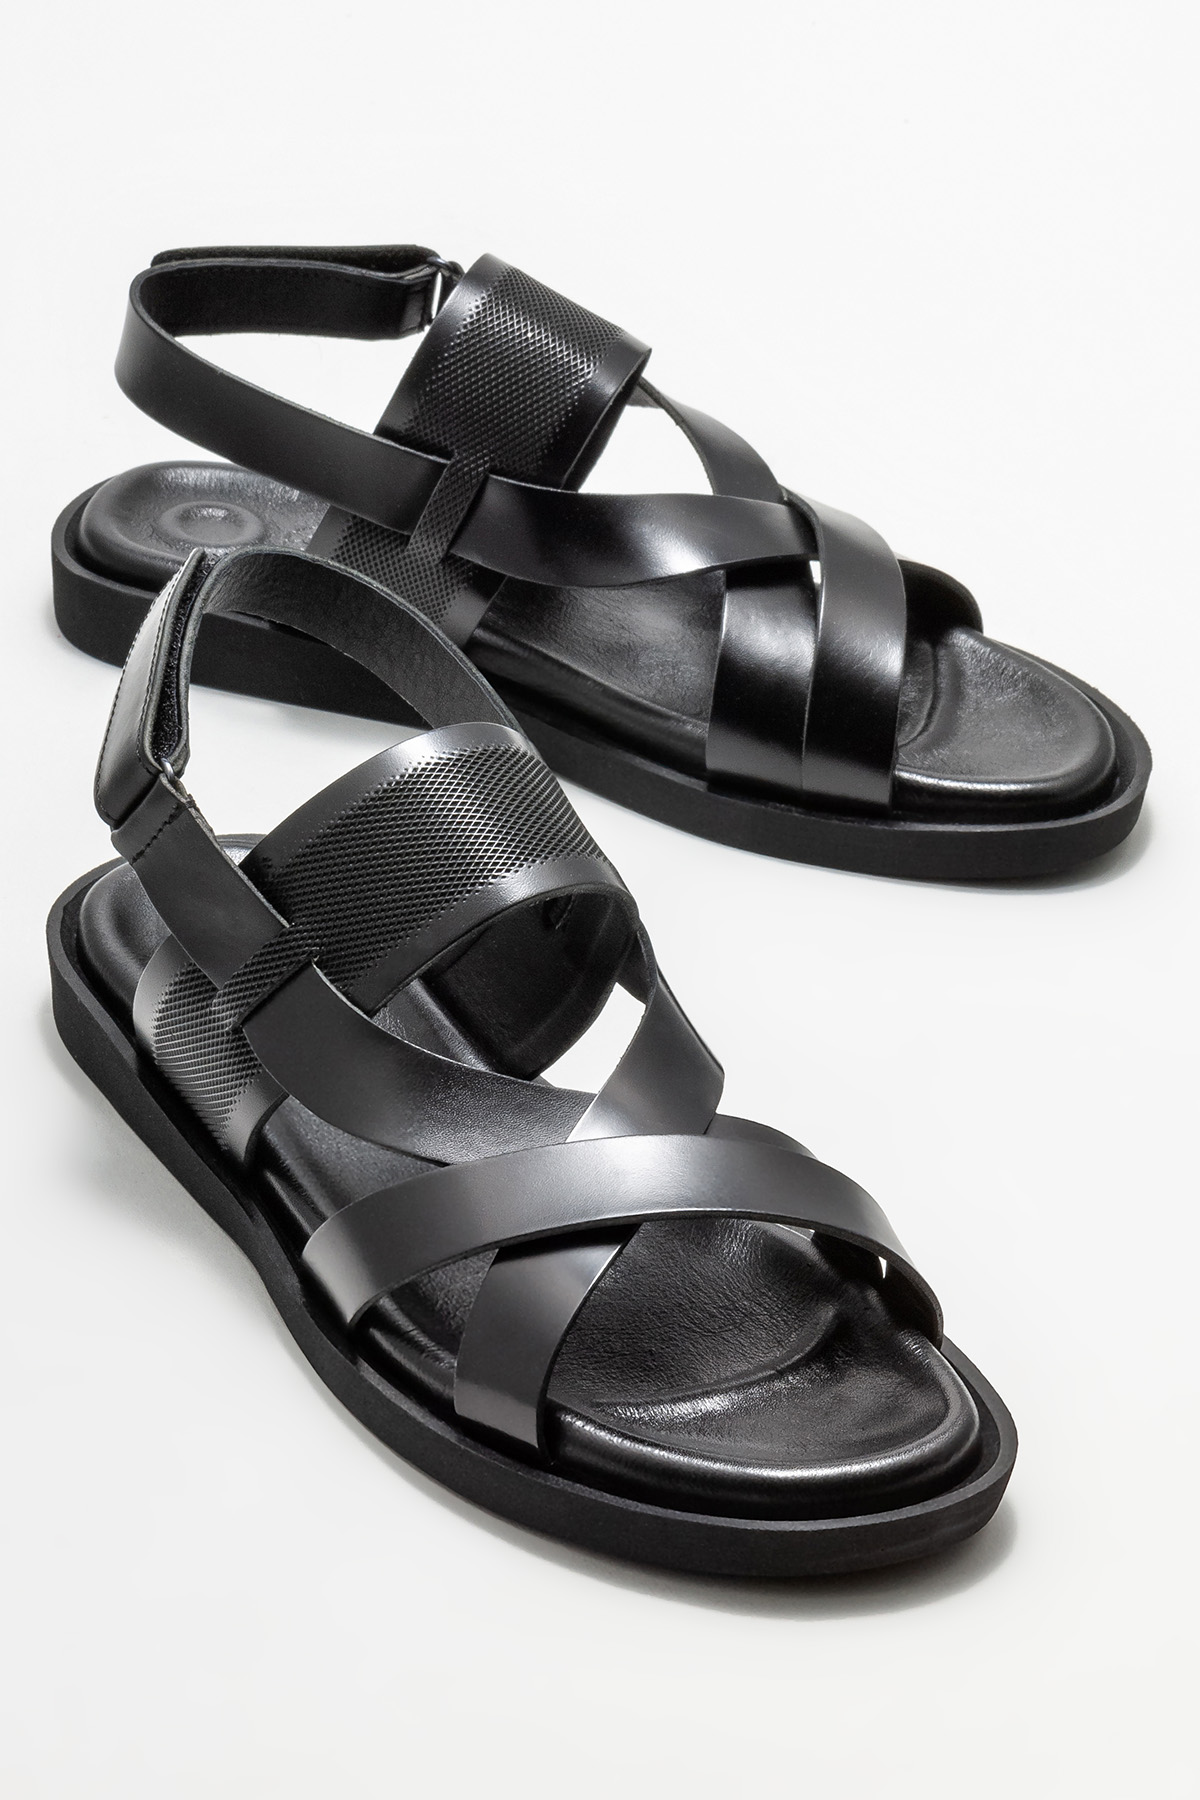 Siyah Deri Erkek Sandalet Satın Al! KOEN-01 Fiyatı | Elle Shoes